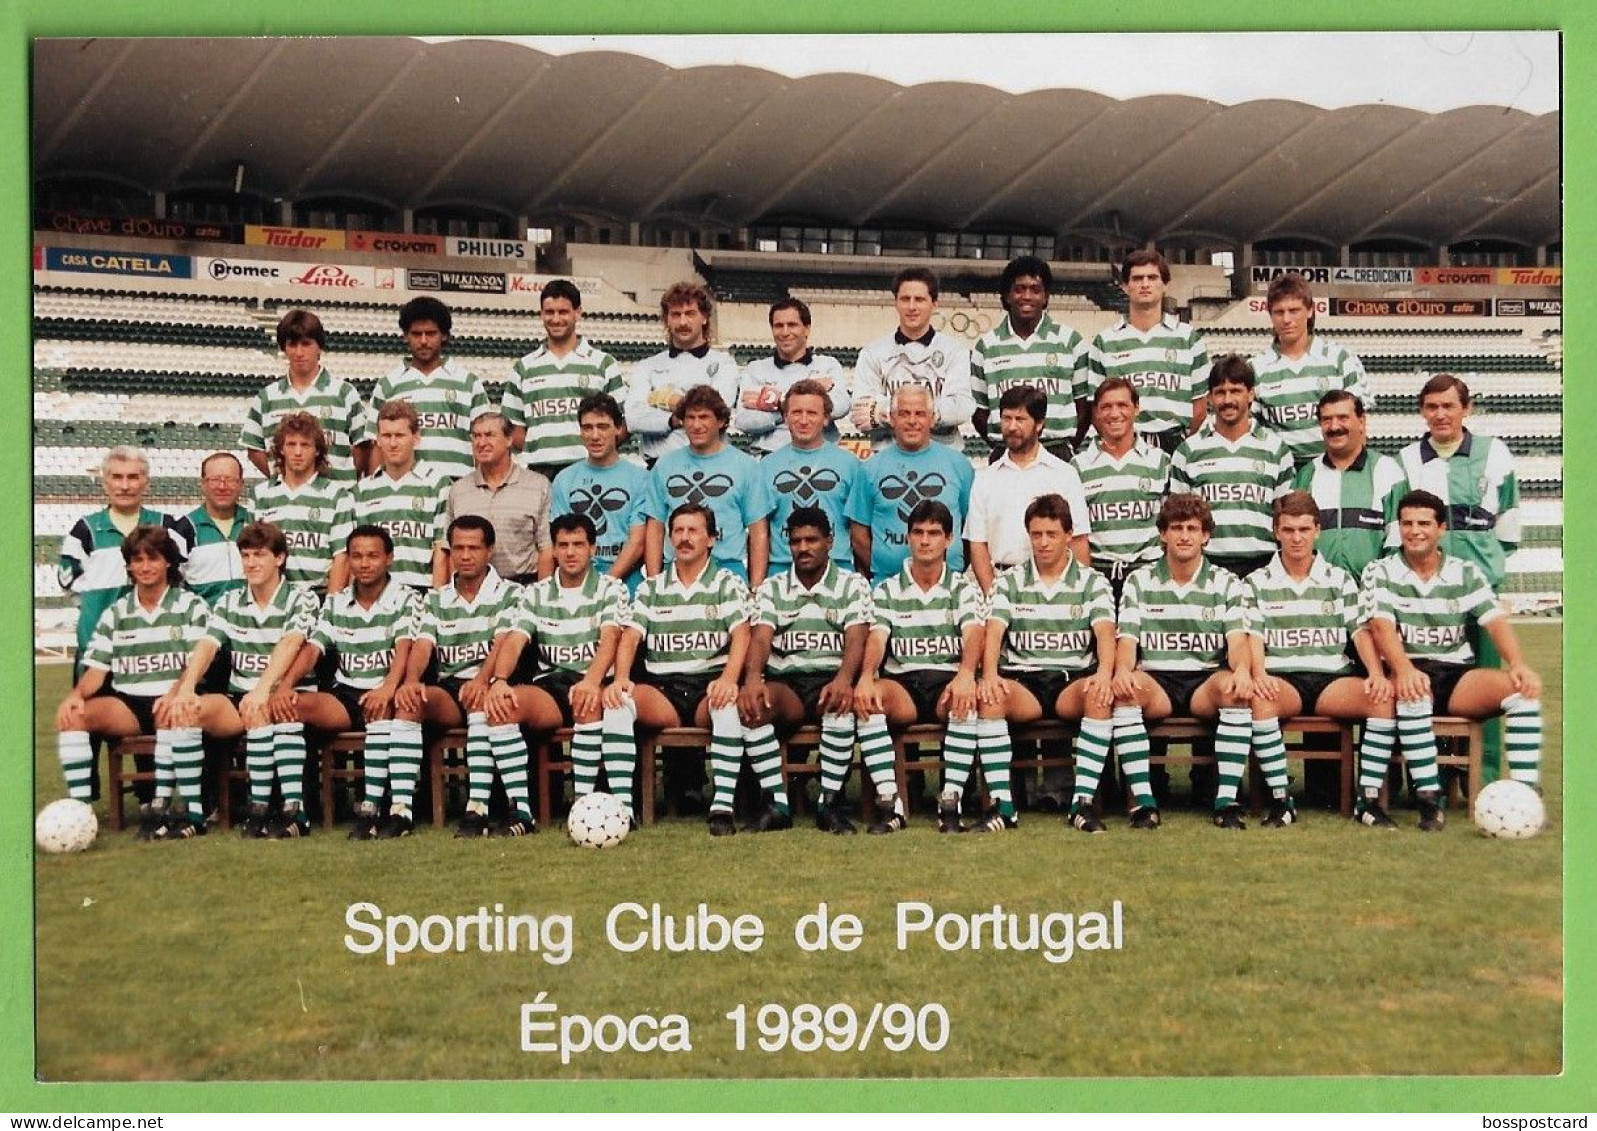 Lisboa - REAL PHOTO - Equipa De Futebol Do Sporting Clube De Portugal - Estádio - Football - Stadium - Portugal - Football